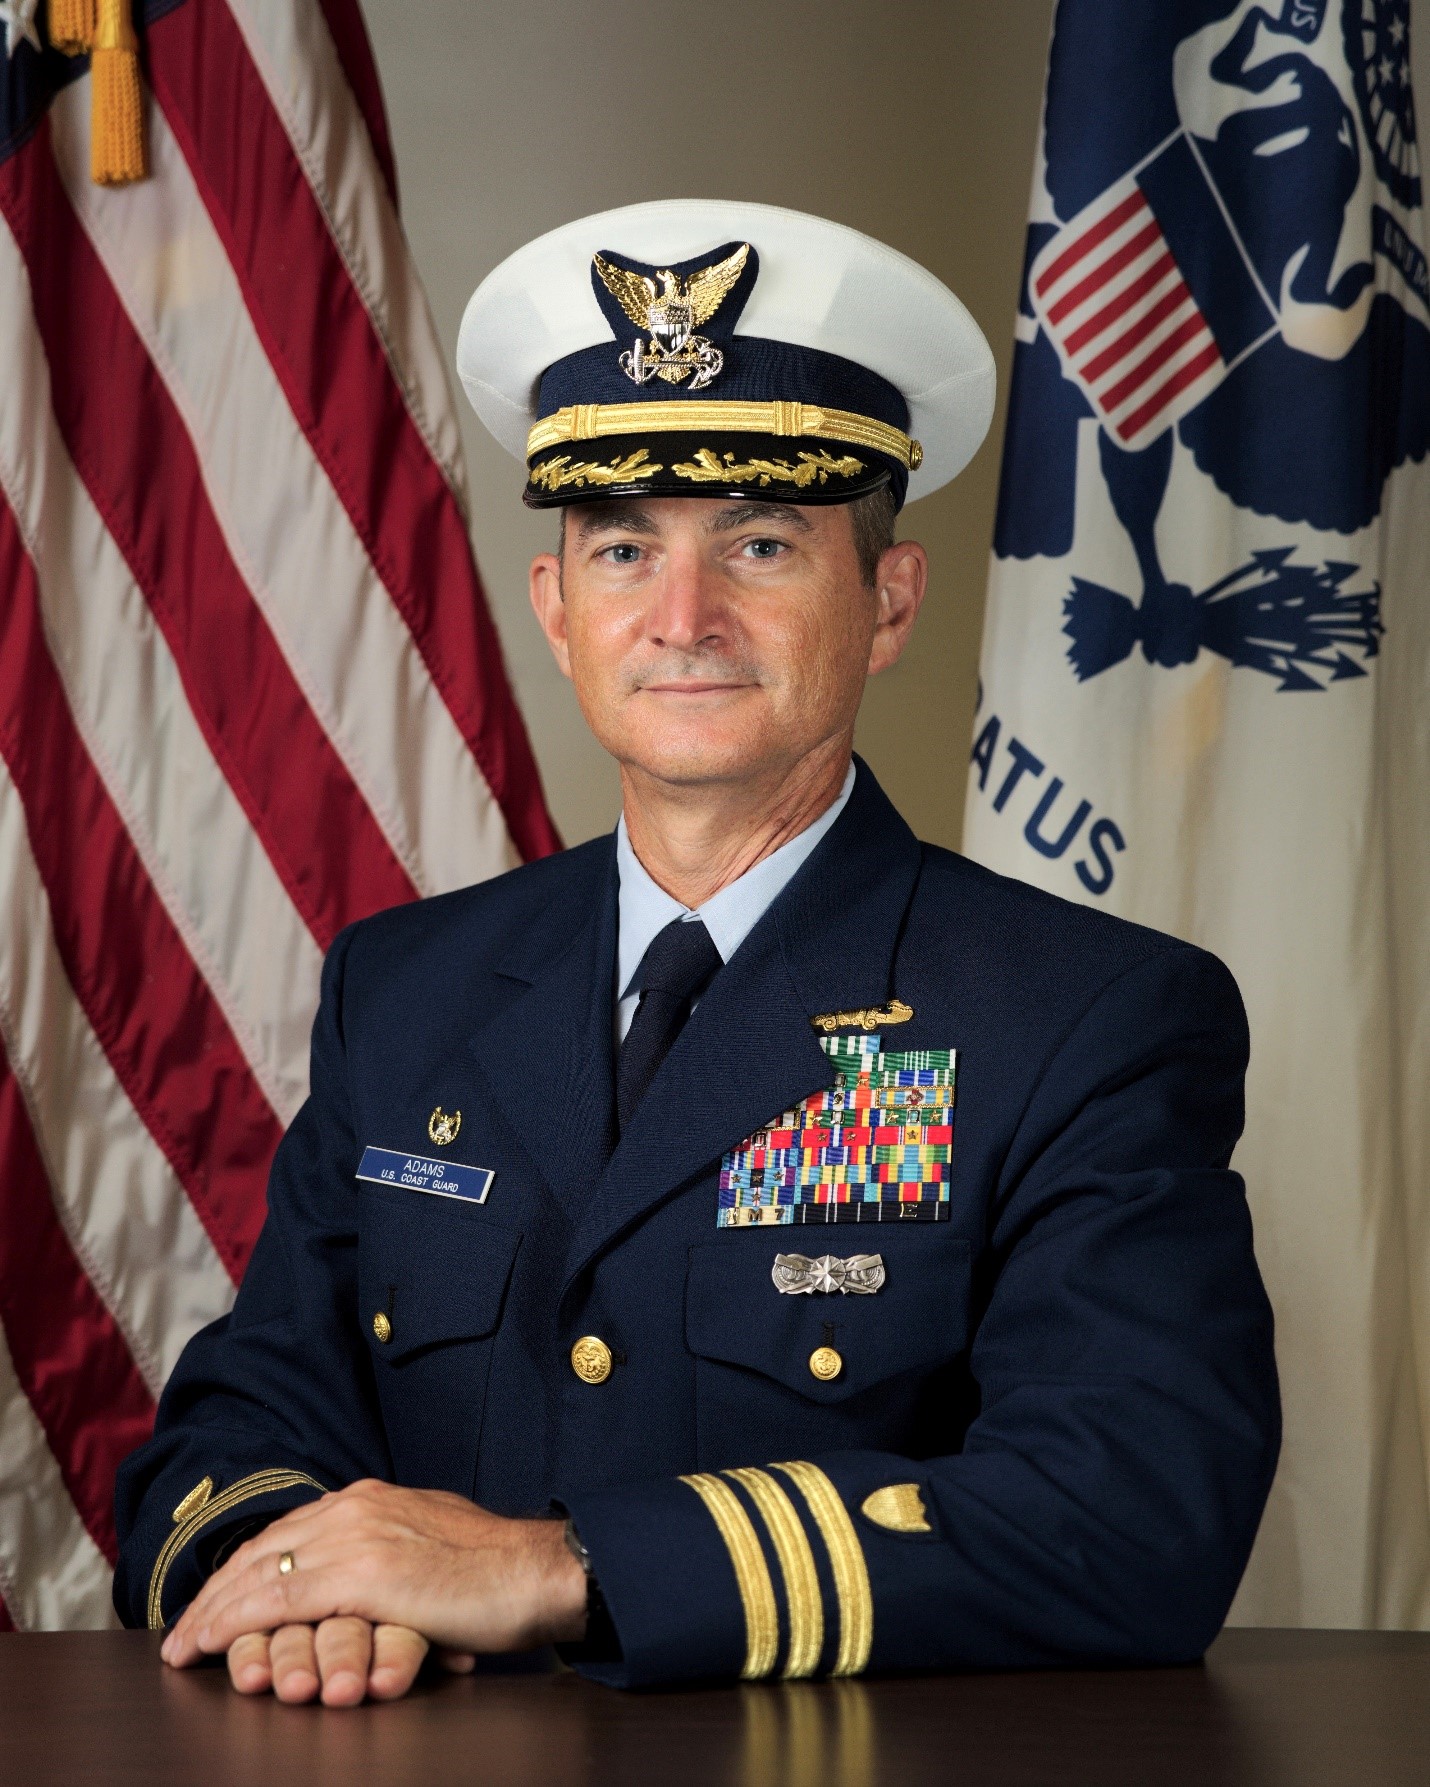 Commander Adams